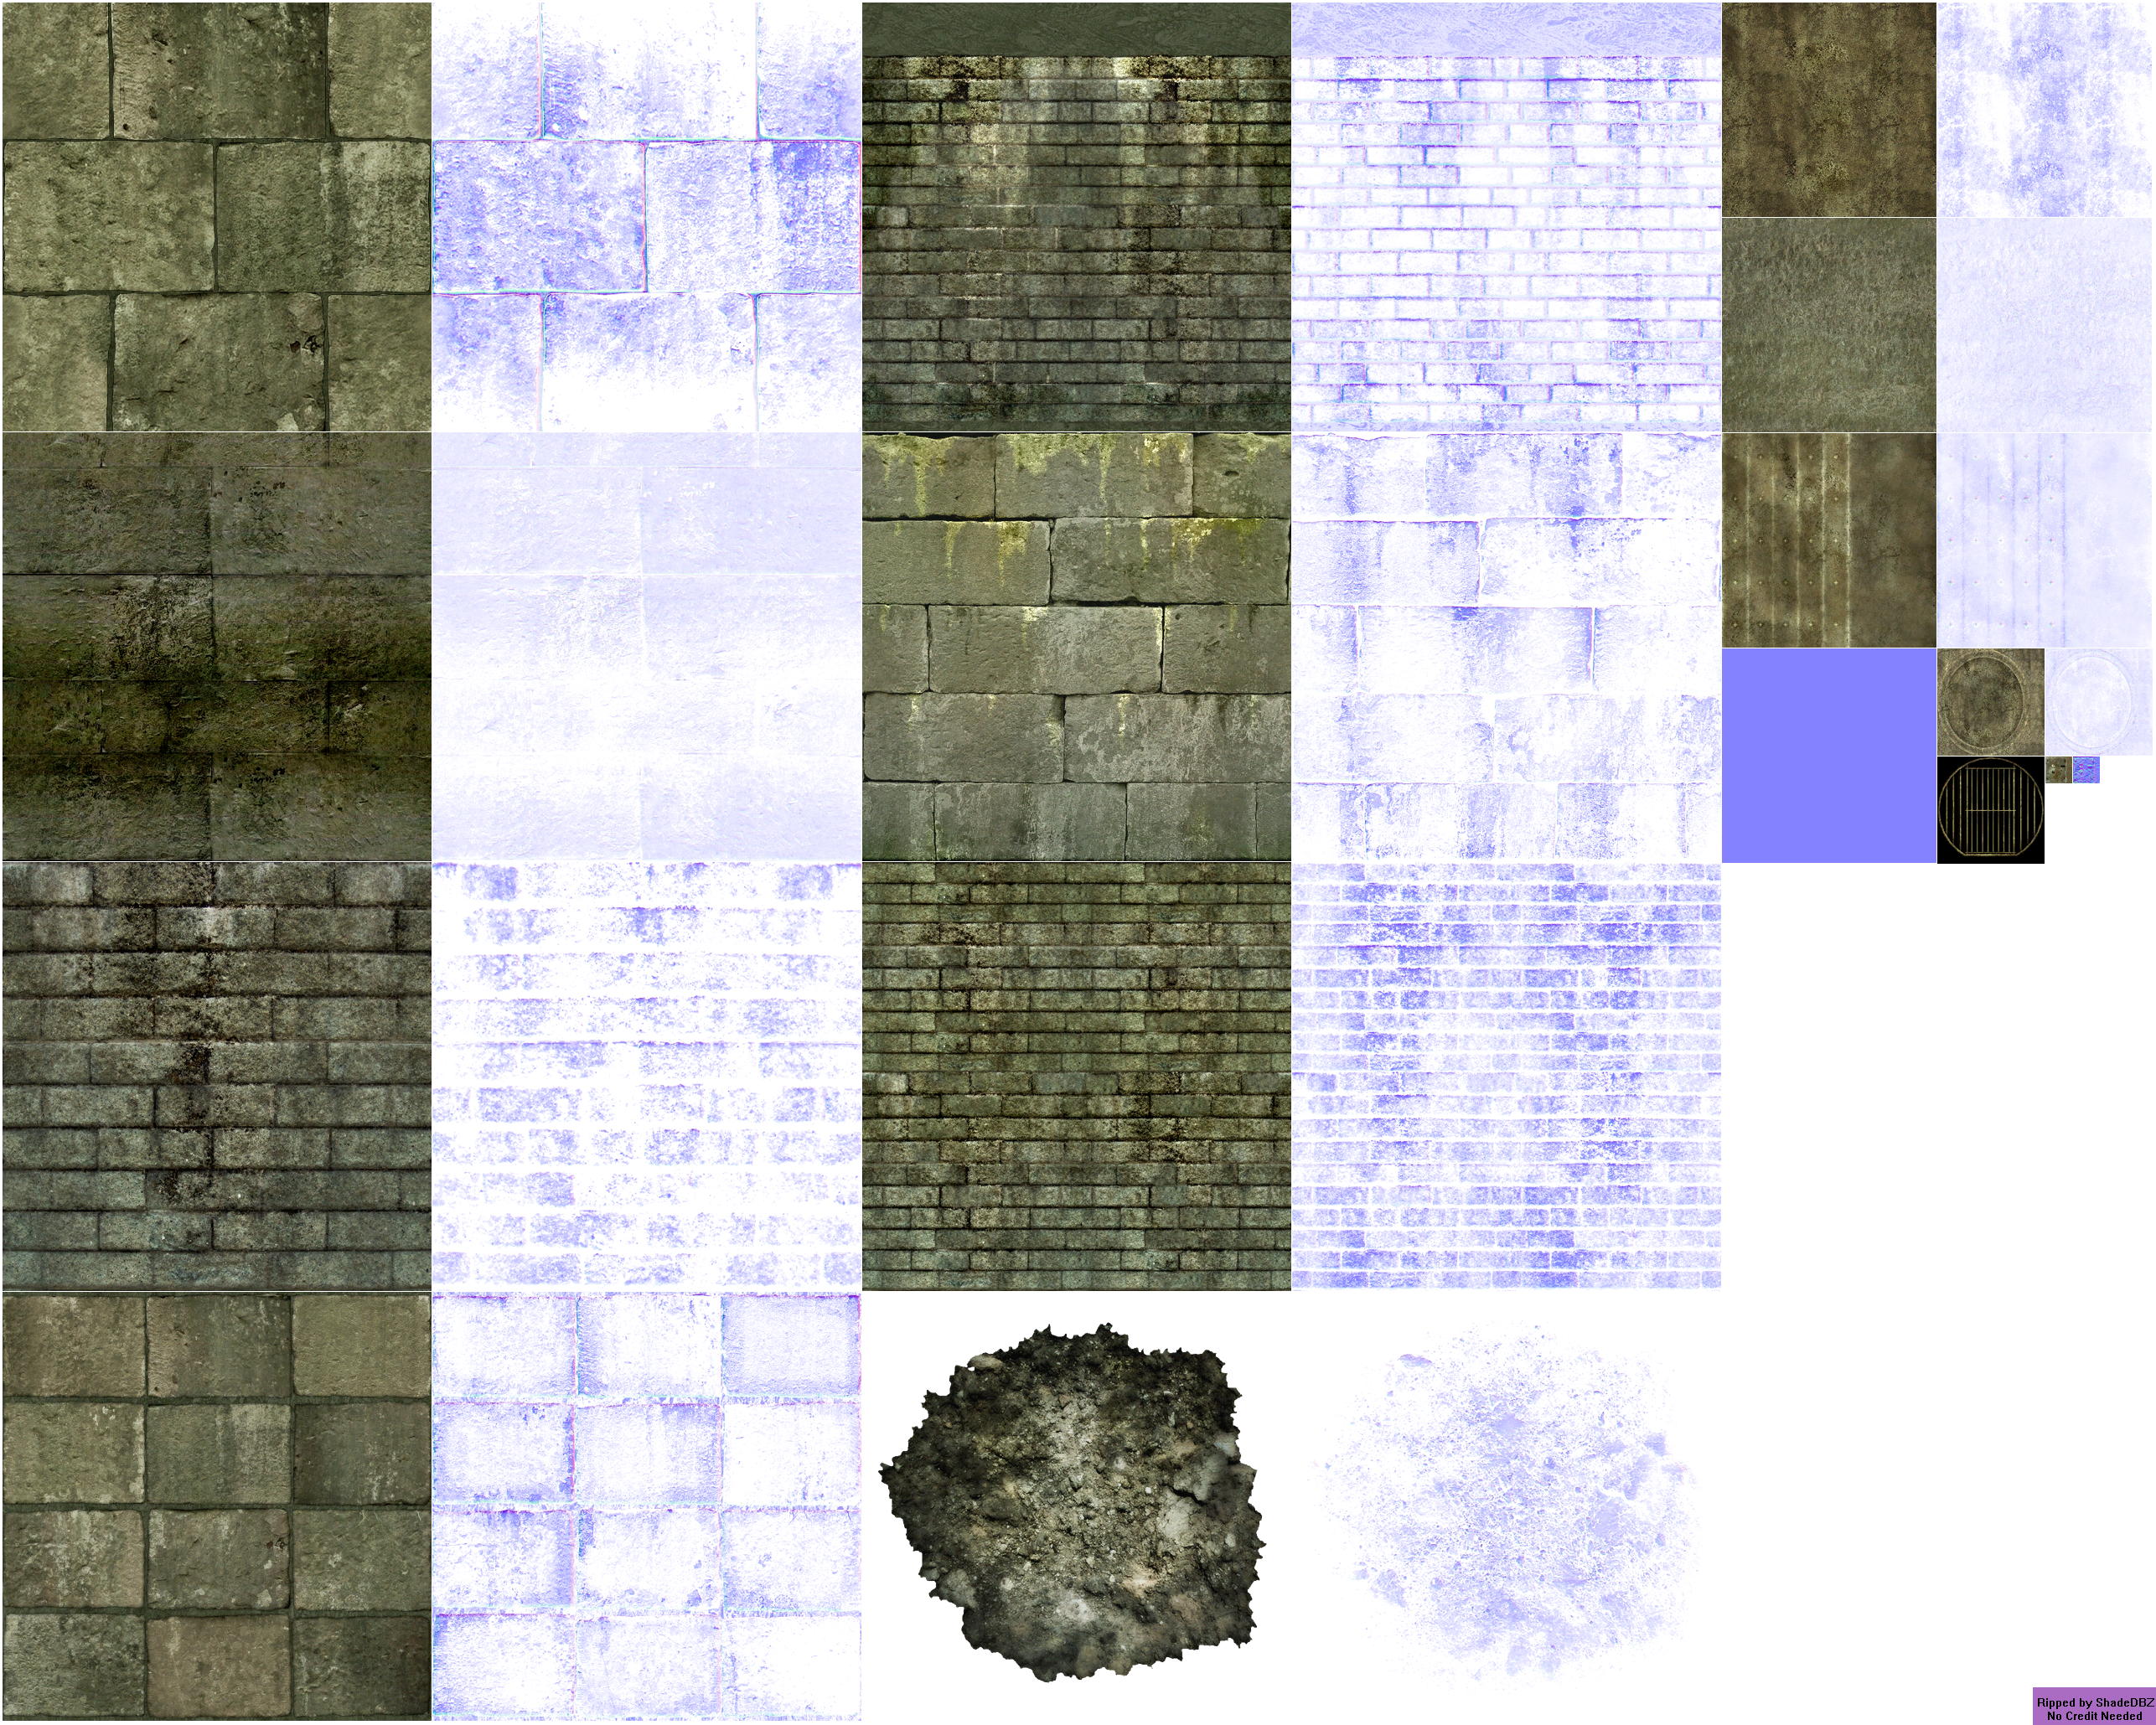 The Elder Scrolls IV: Oblivion - Sewers